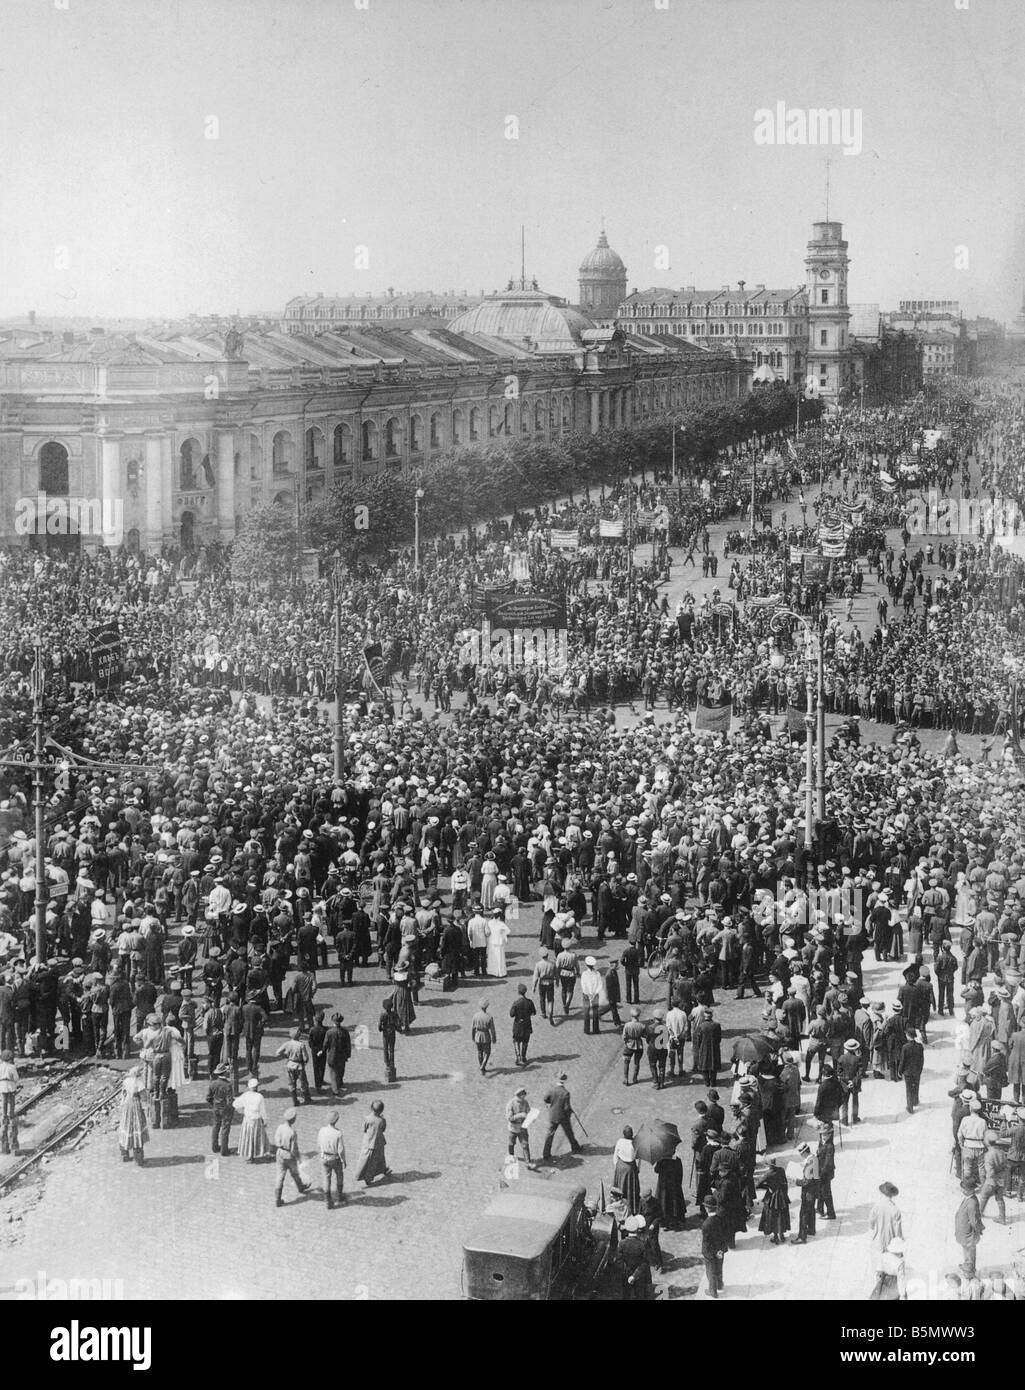 9ème 1917 618 A1 à Petrograd de démonstration 18 juin 1918 Révolution Russe 1917 Démonstration de démocratie révolutionnaire dans les animaux de compagnie Banque D'Images